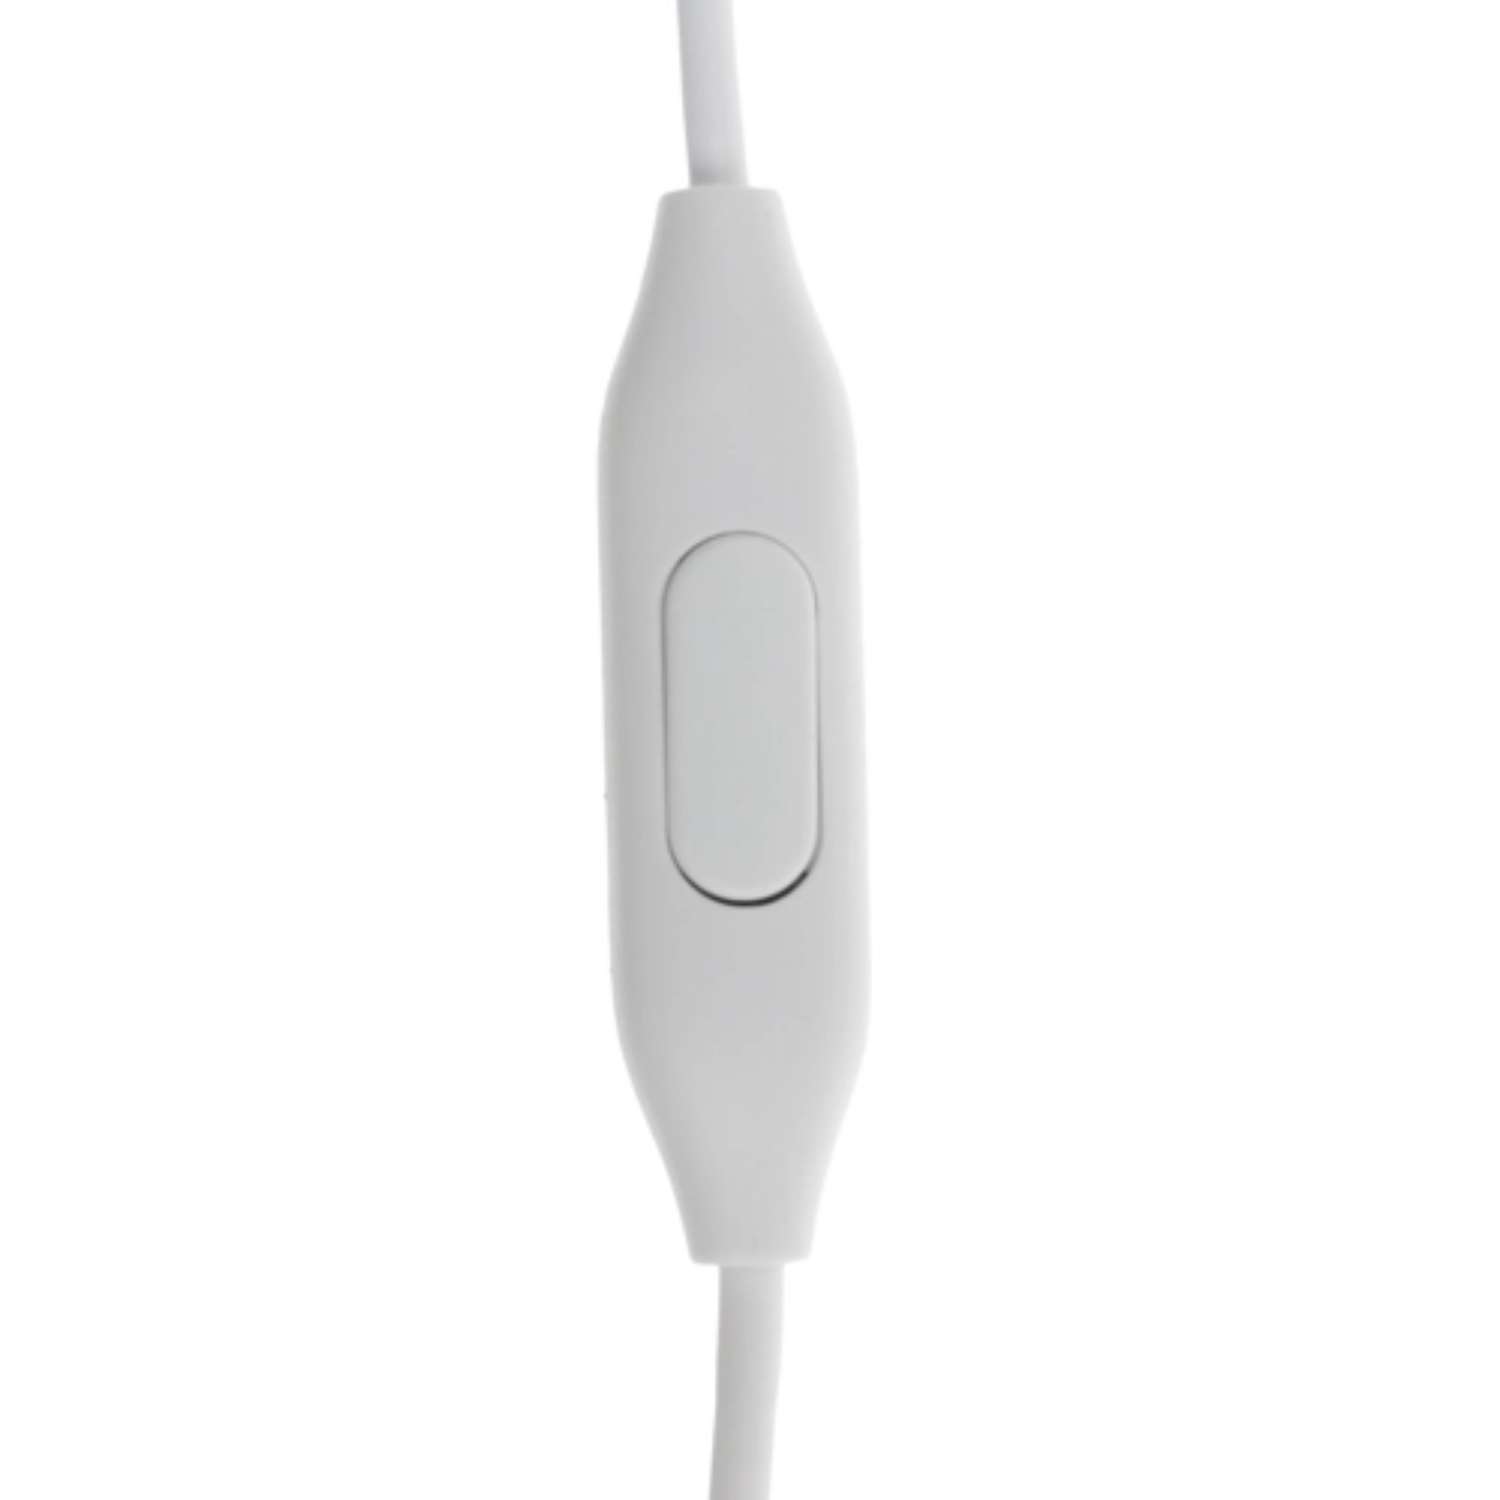 Наушники XIAOMI Mi In-Ear Basic вакуумные микрофон 32 Ом 3.5 мм 1.25 м серебристые - фото 6